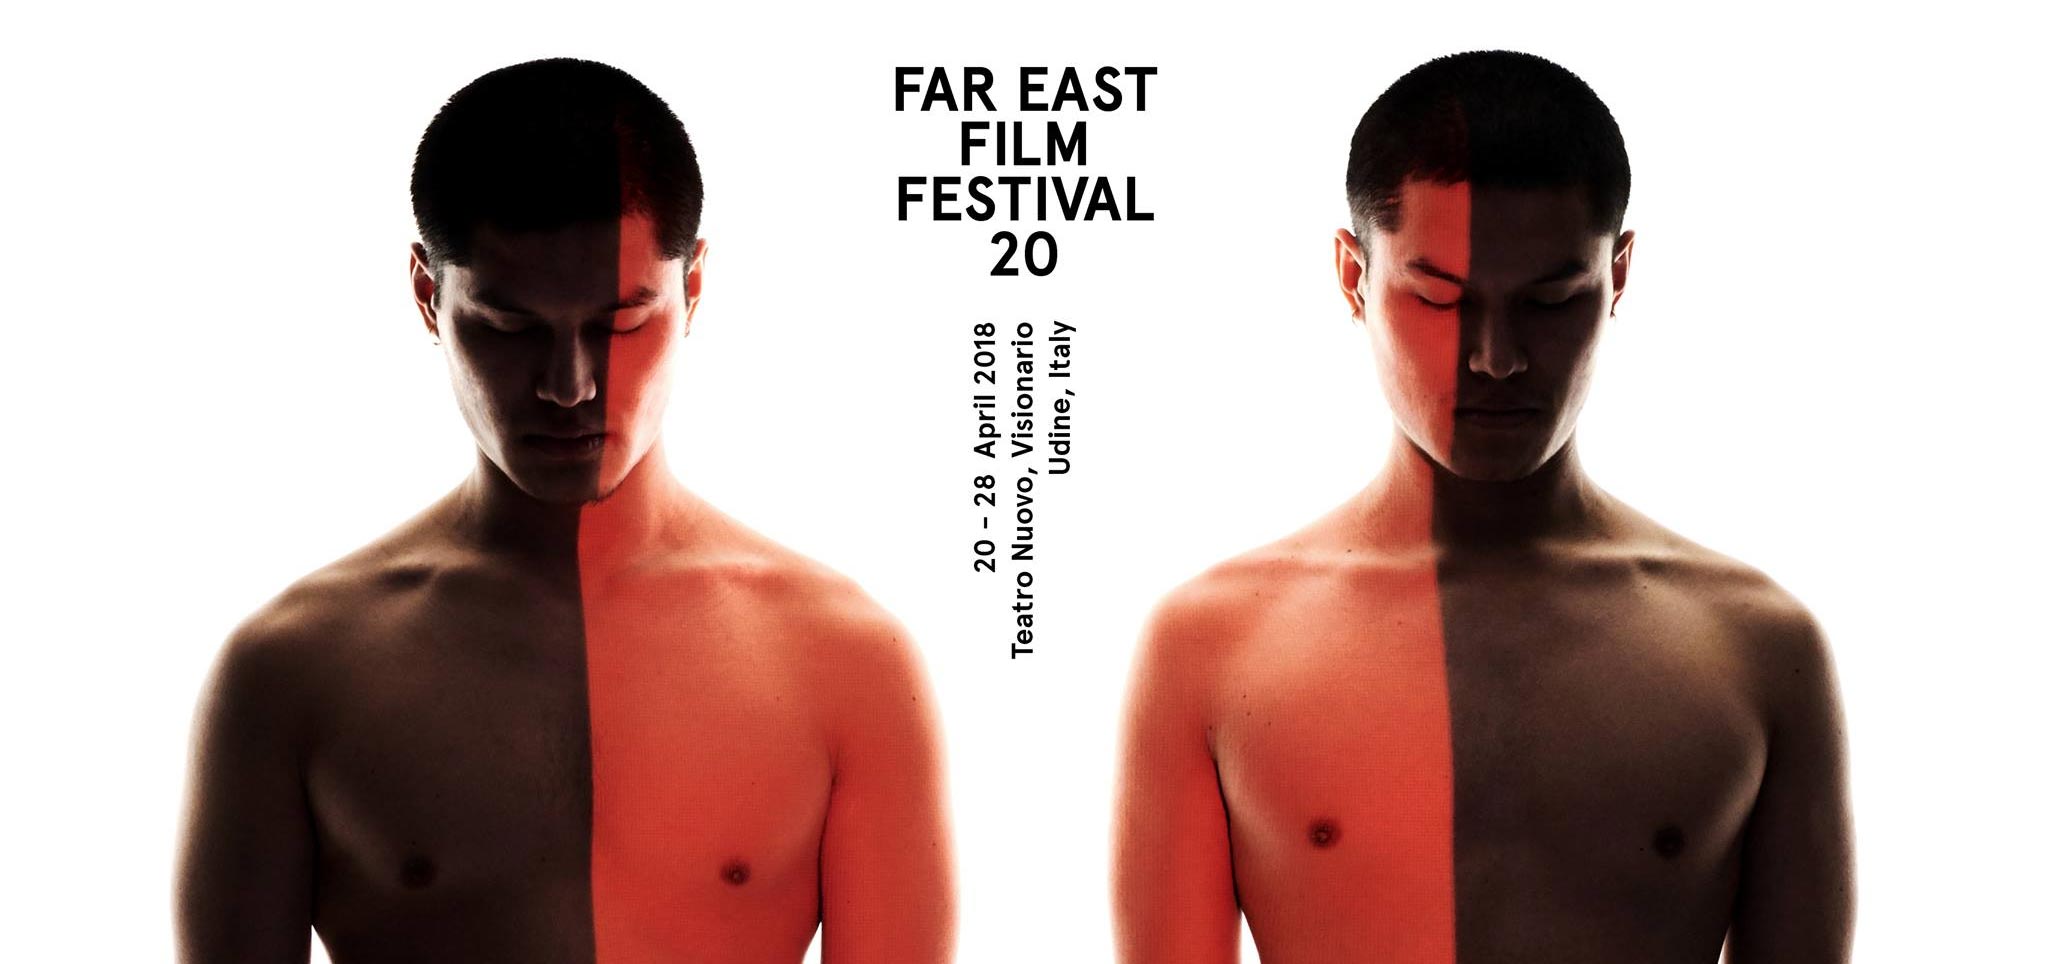 Far East Film Festival 2018